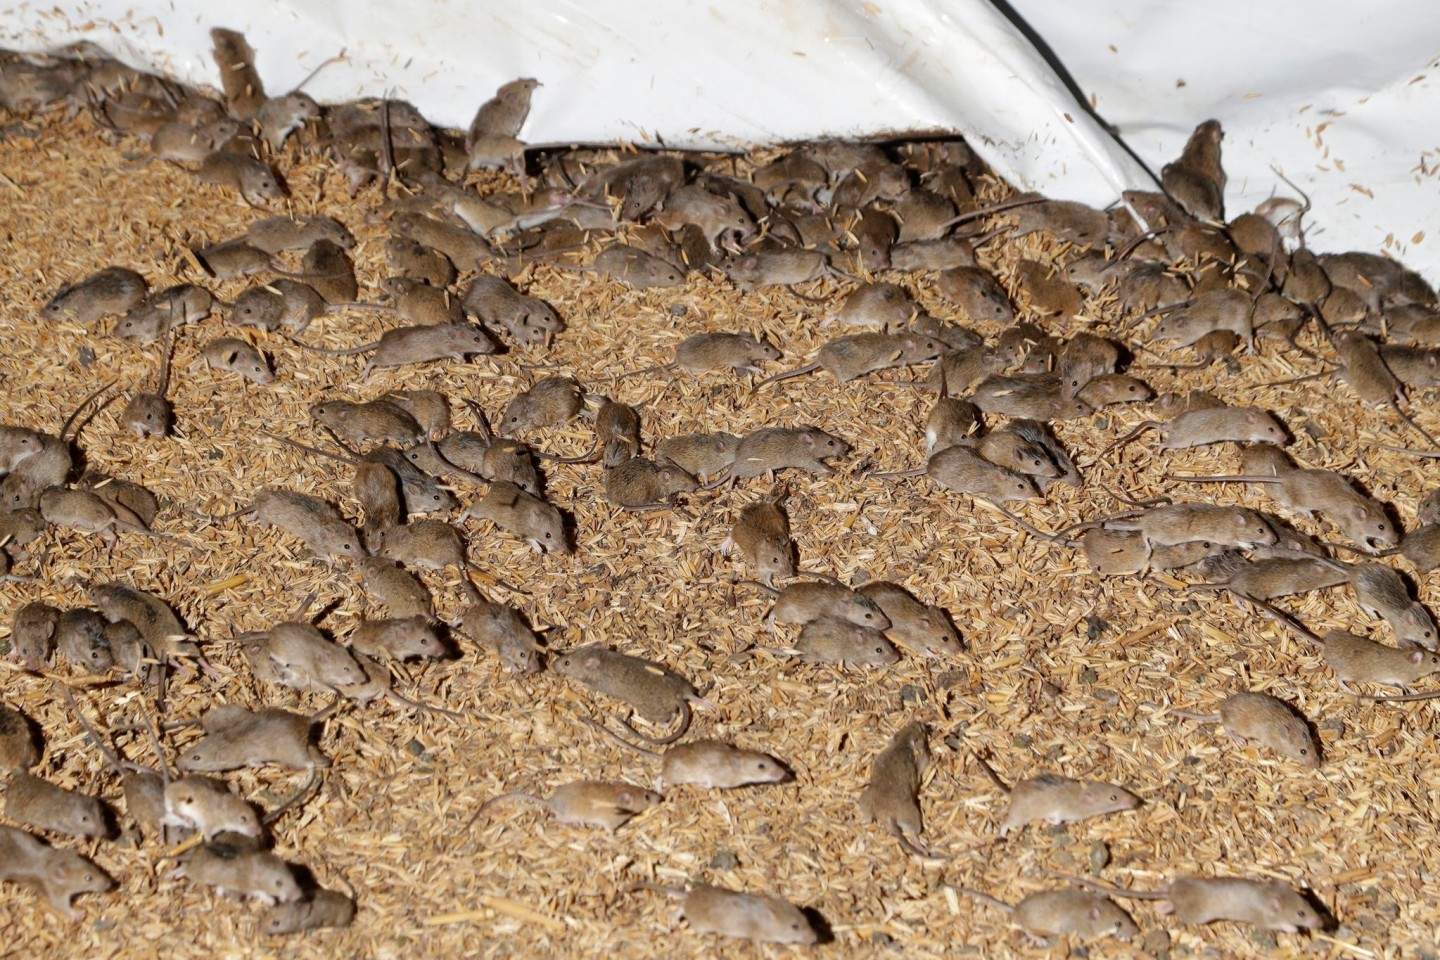 Mäuse wuseln um gelagertes Getreide auf einer Farm. Im Südosten Australiens wird Medienberichten zufolge ein Gefängnis wegen einer Mäuseplage evakuiert.